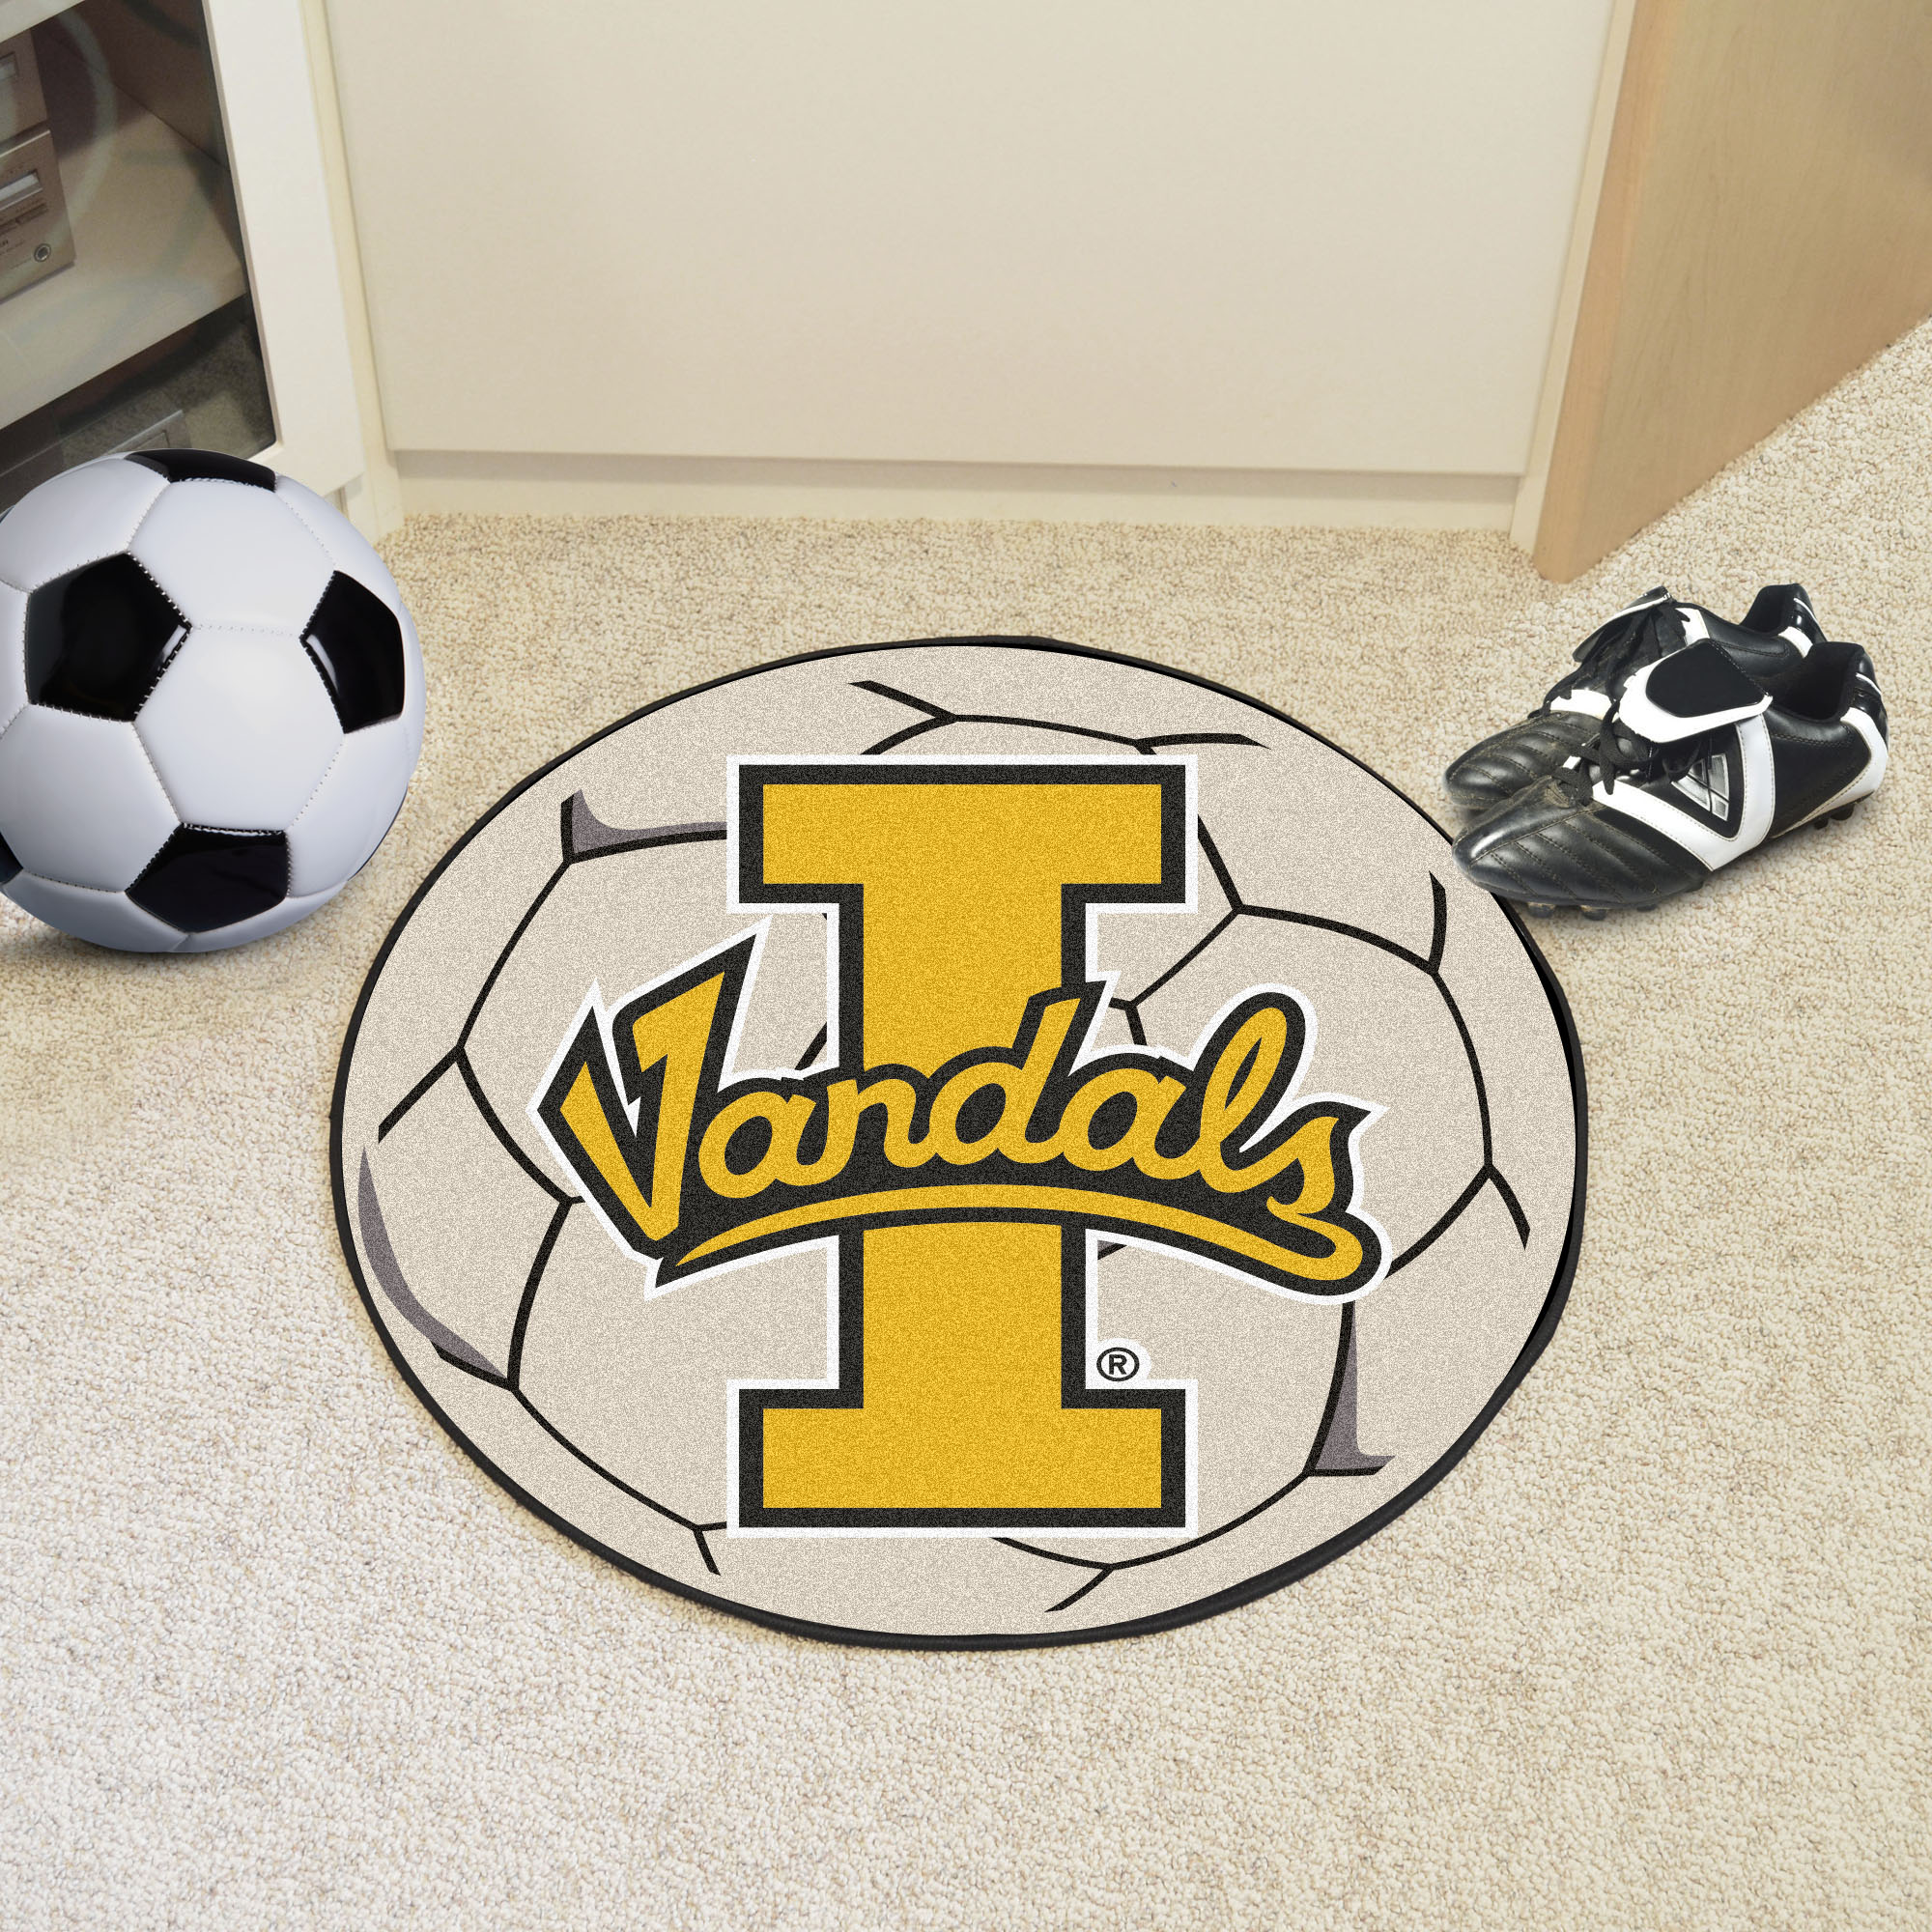 University of Idaho Ball Shaped Area Rugs (Ball Shaped Area Rugs: Soccer Ball)